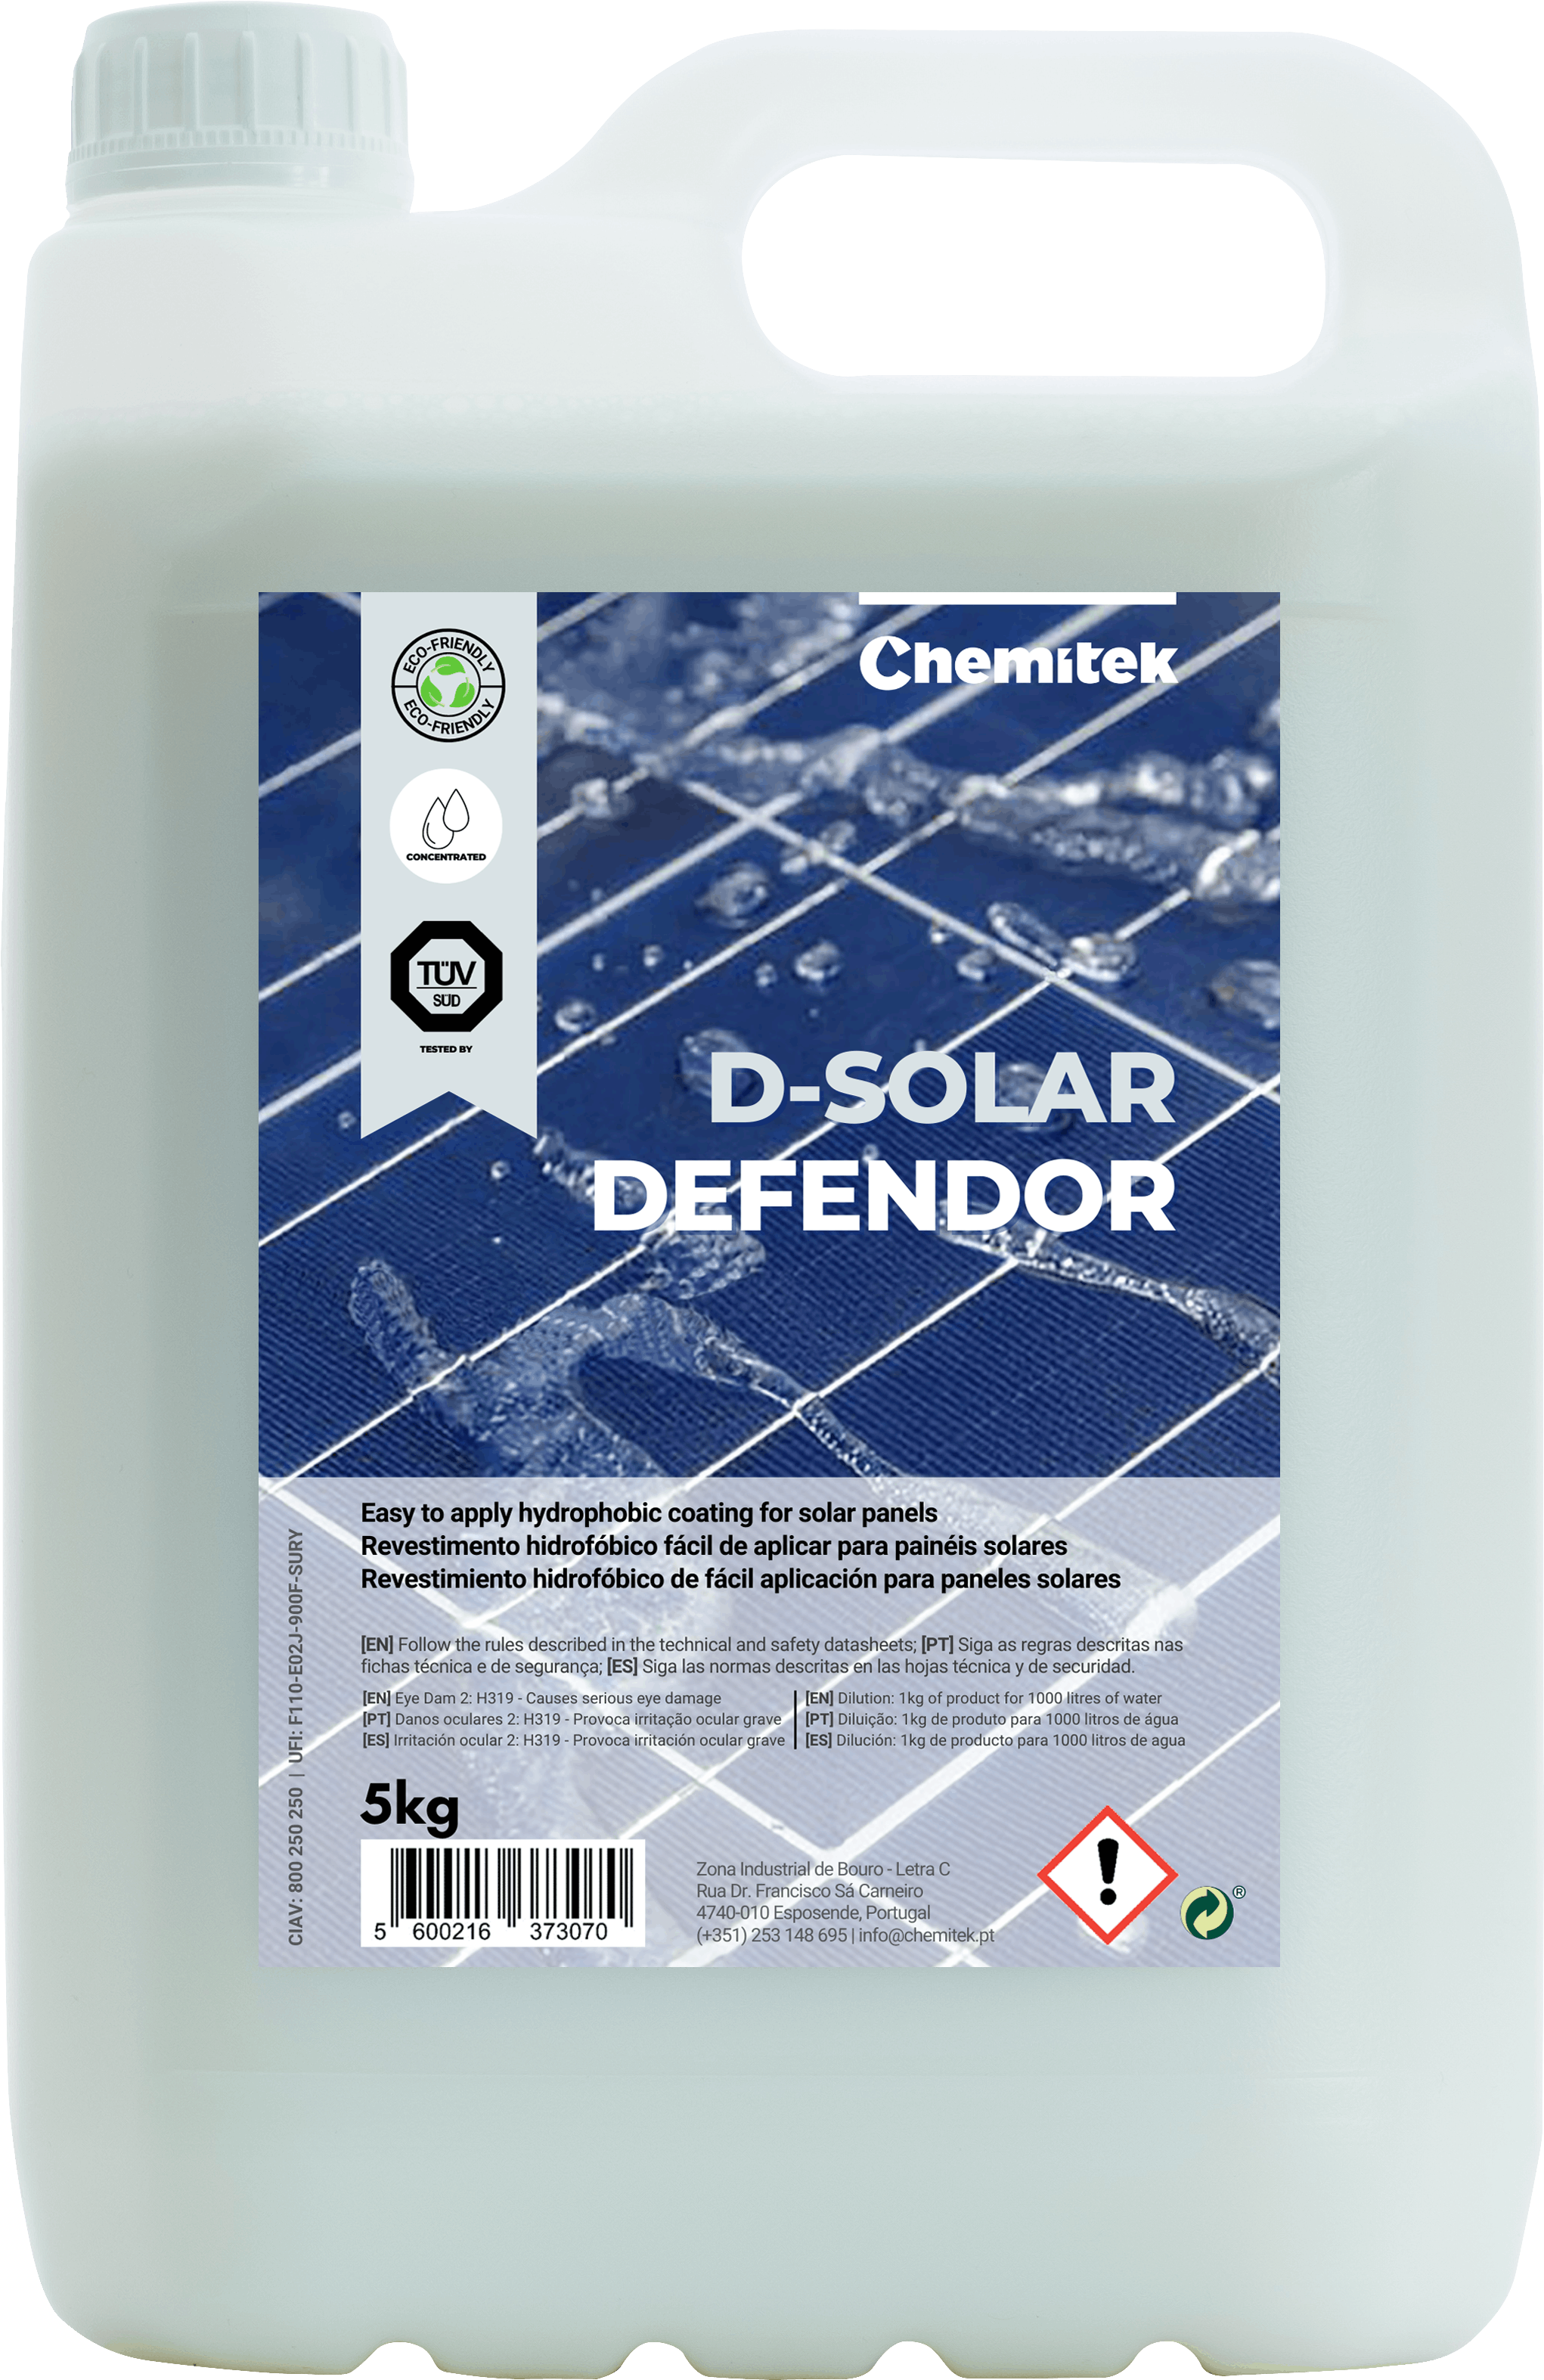 Product - D-Solar Defendor